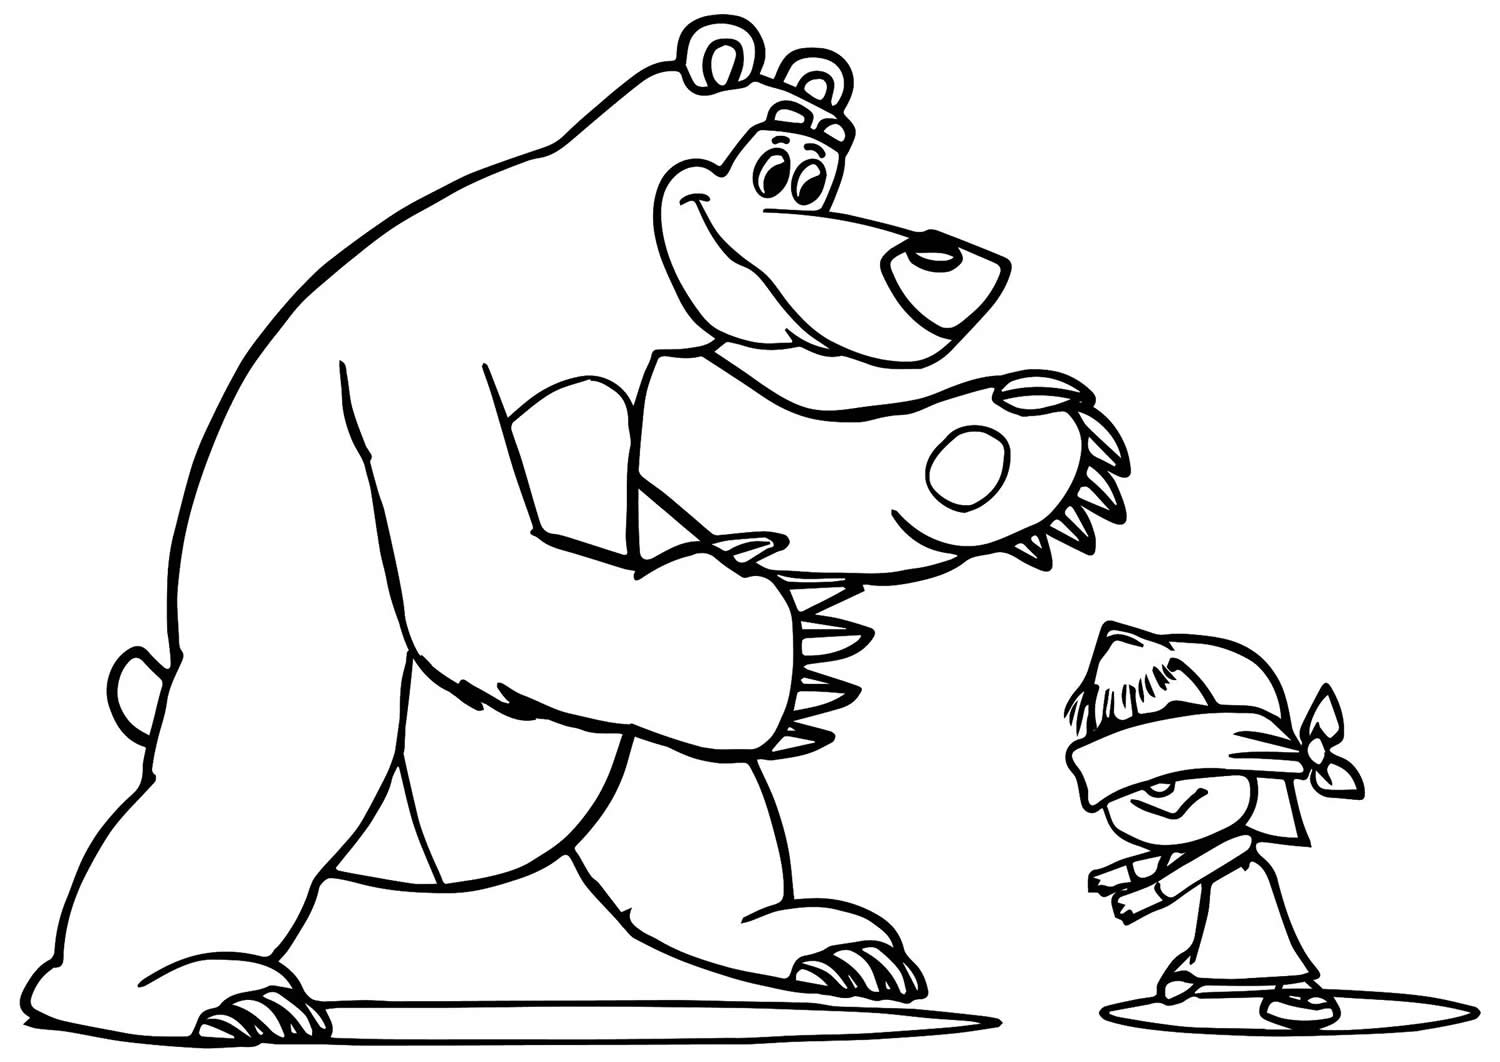 Desenho para colorir de Masha e o Urso